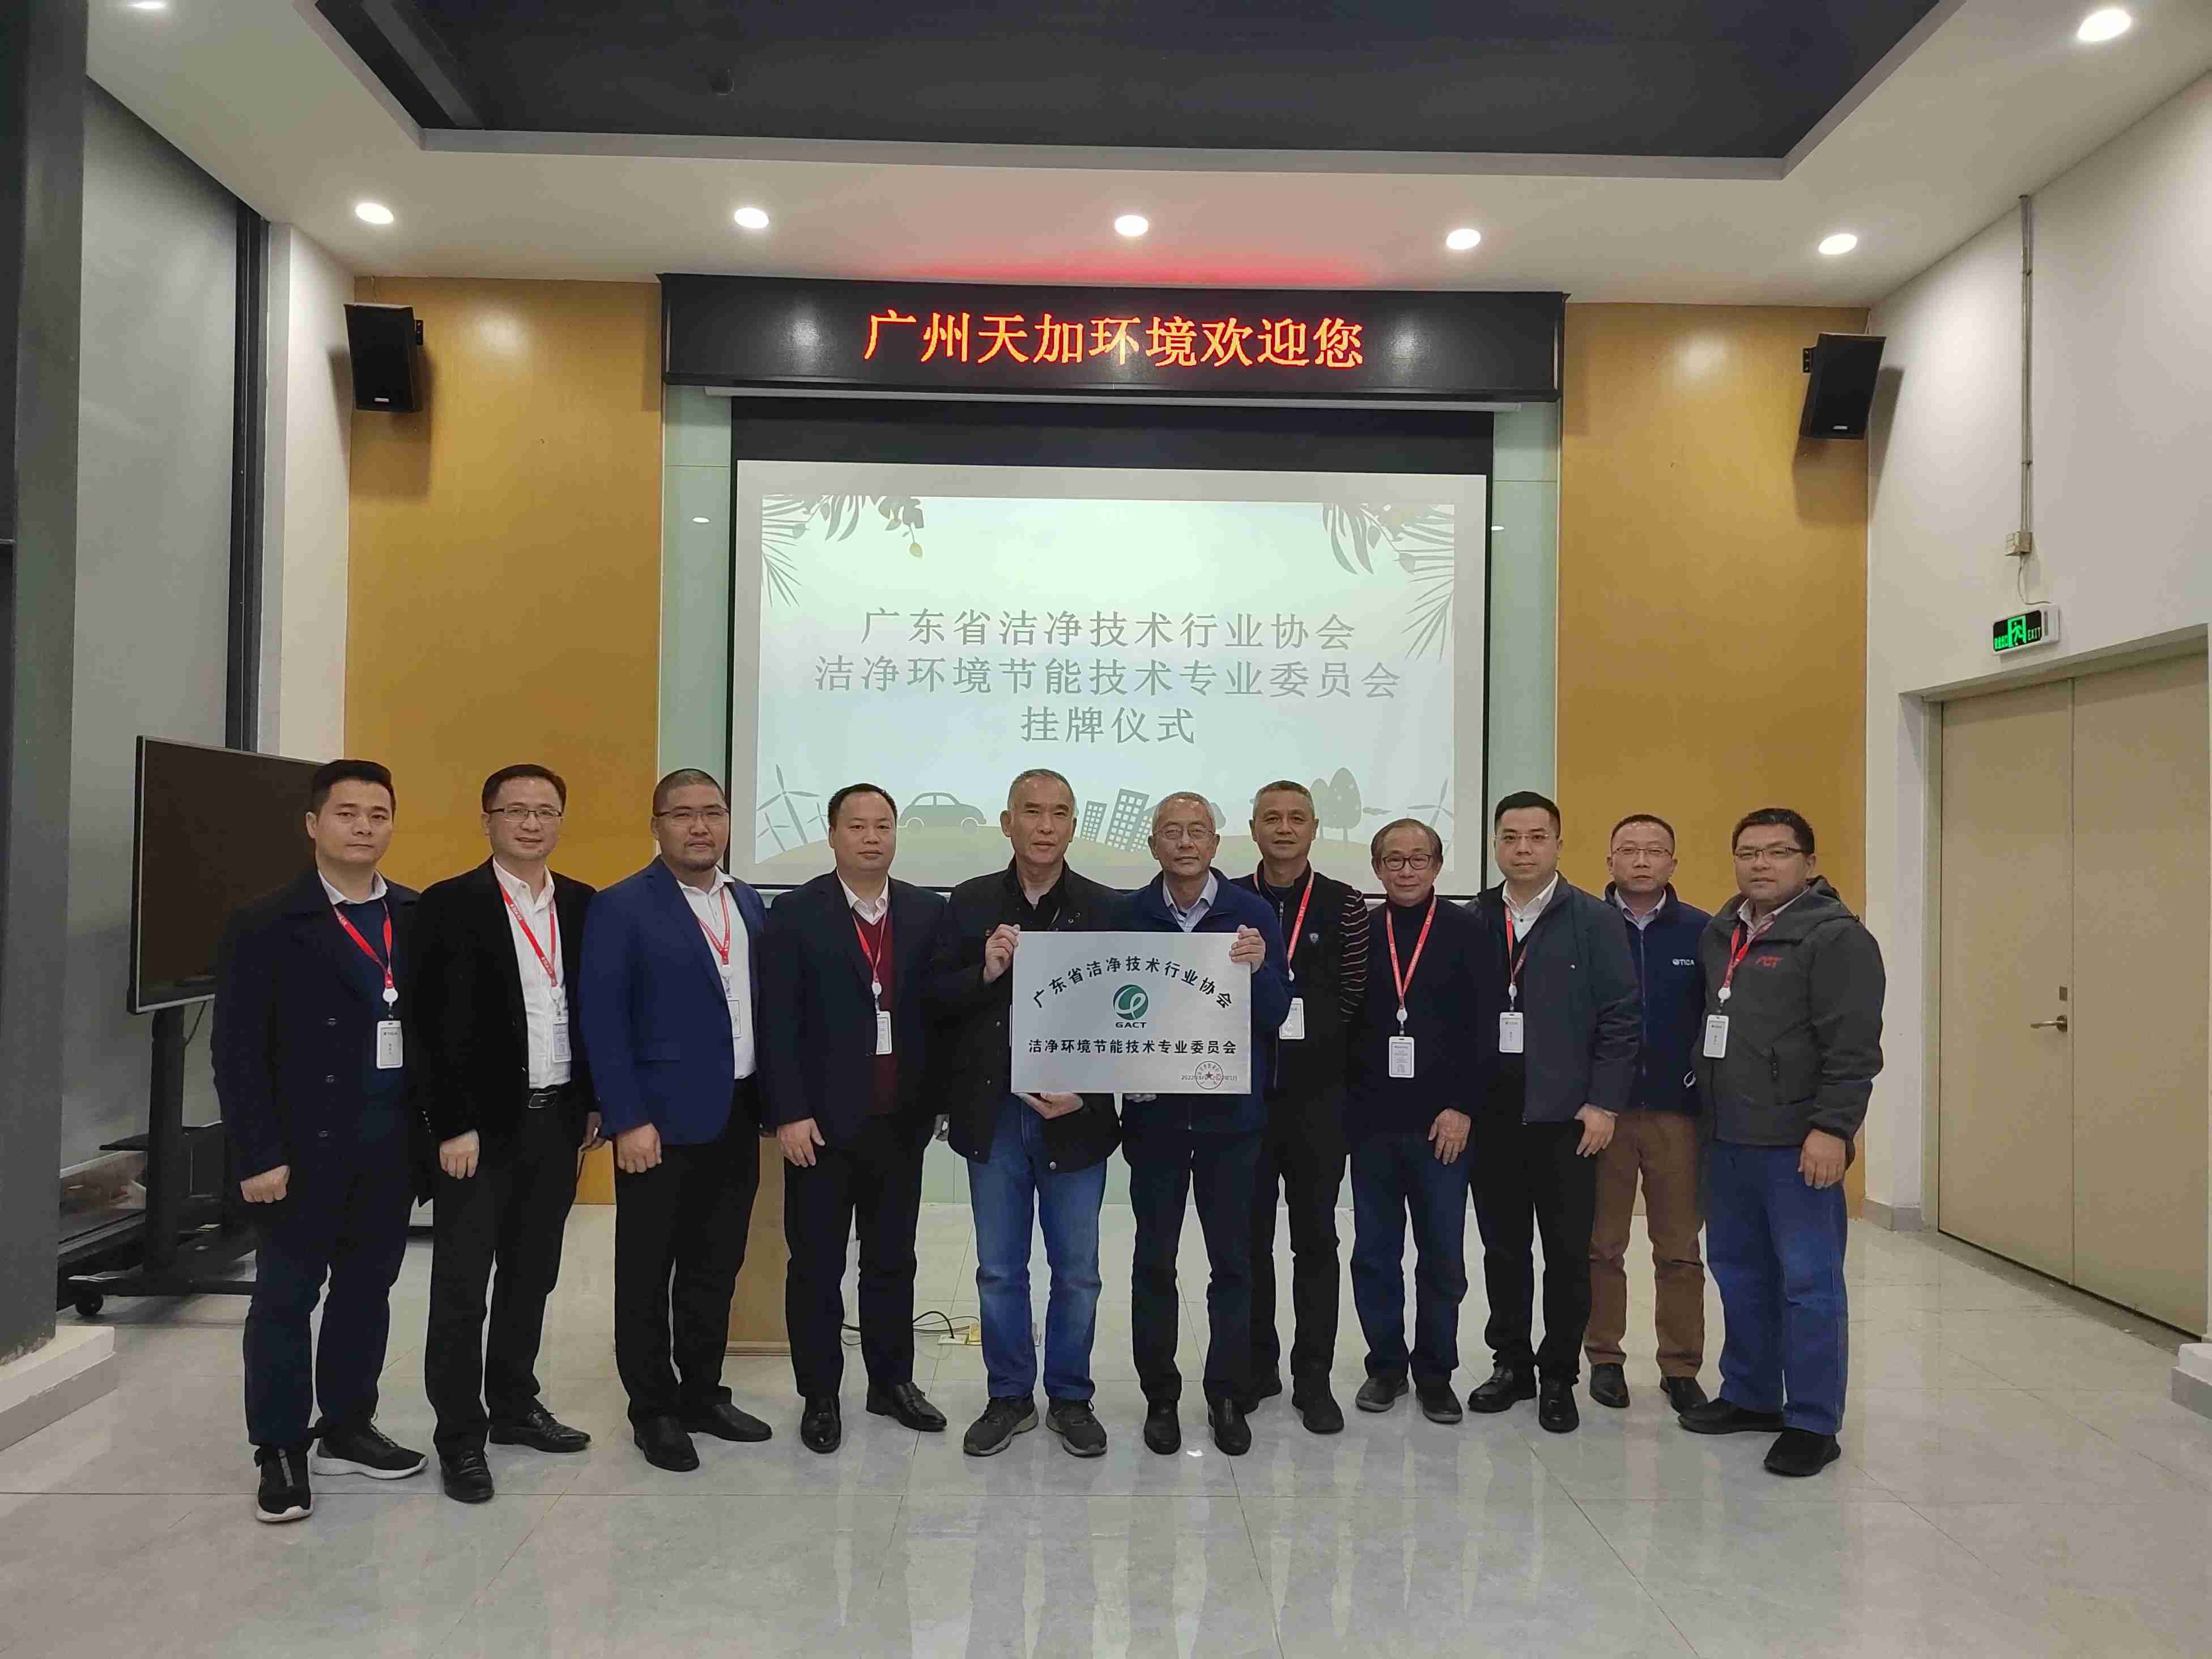 协会洁净环境节能技术专业委员在广州天加环境控制设备有限公司挂牌成立